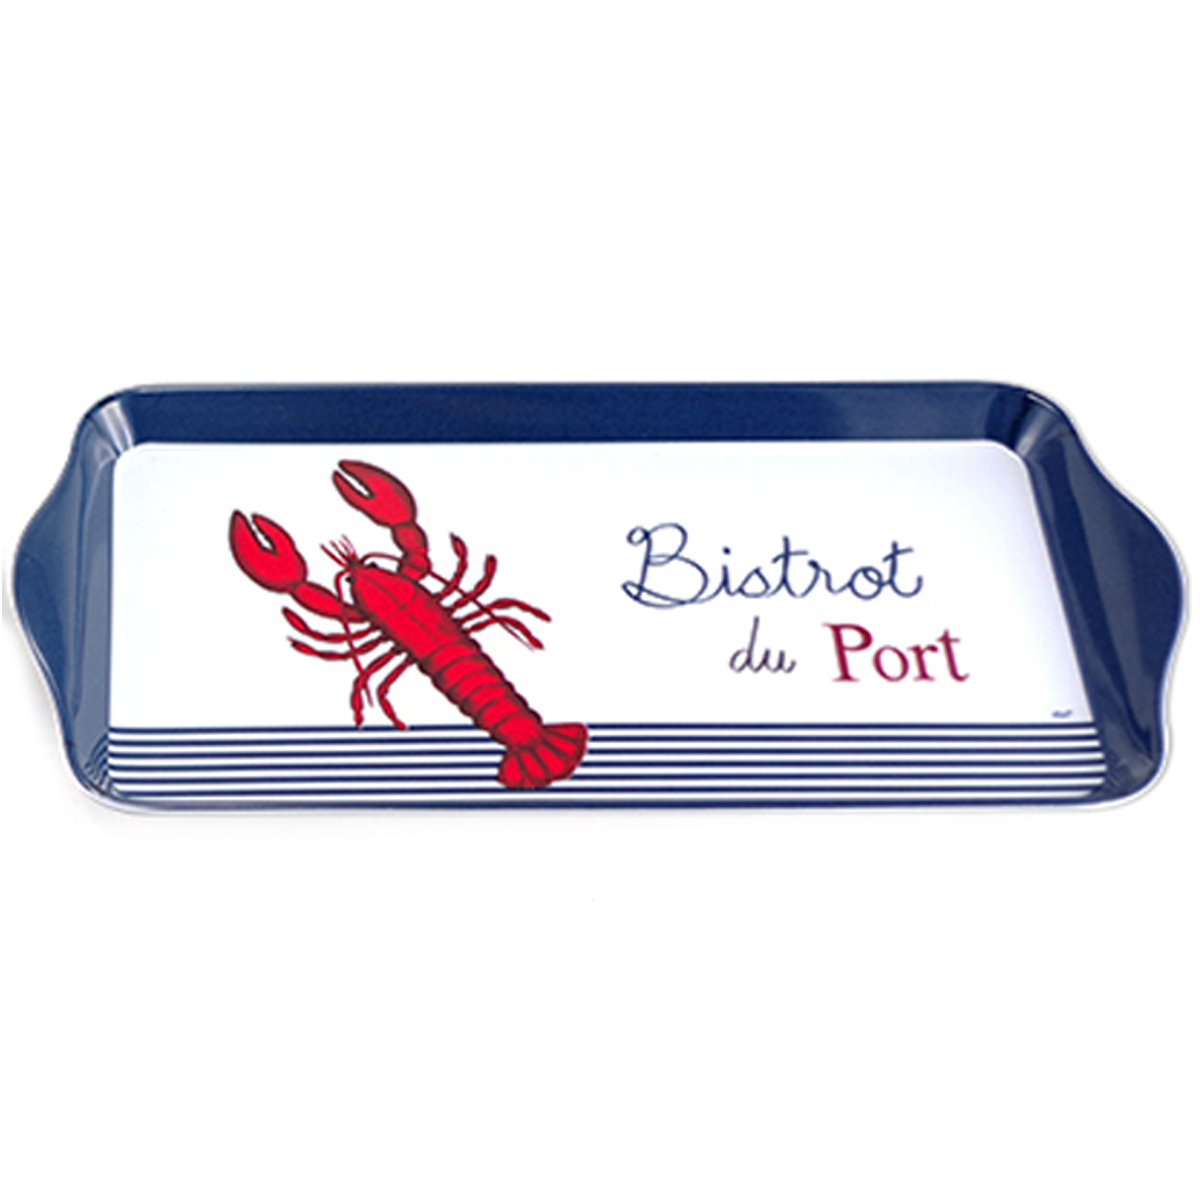 Plateau à cake mélamine \'Bistrot du Port\' rouge bleu blanc (homard) - 30x15 cm - [A2453]